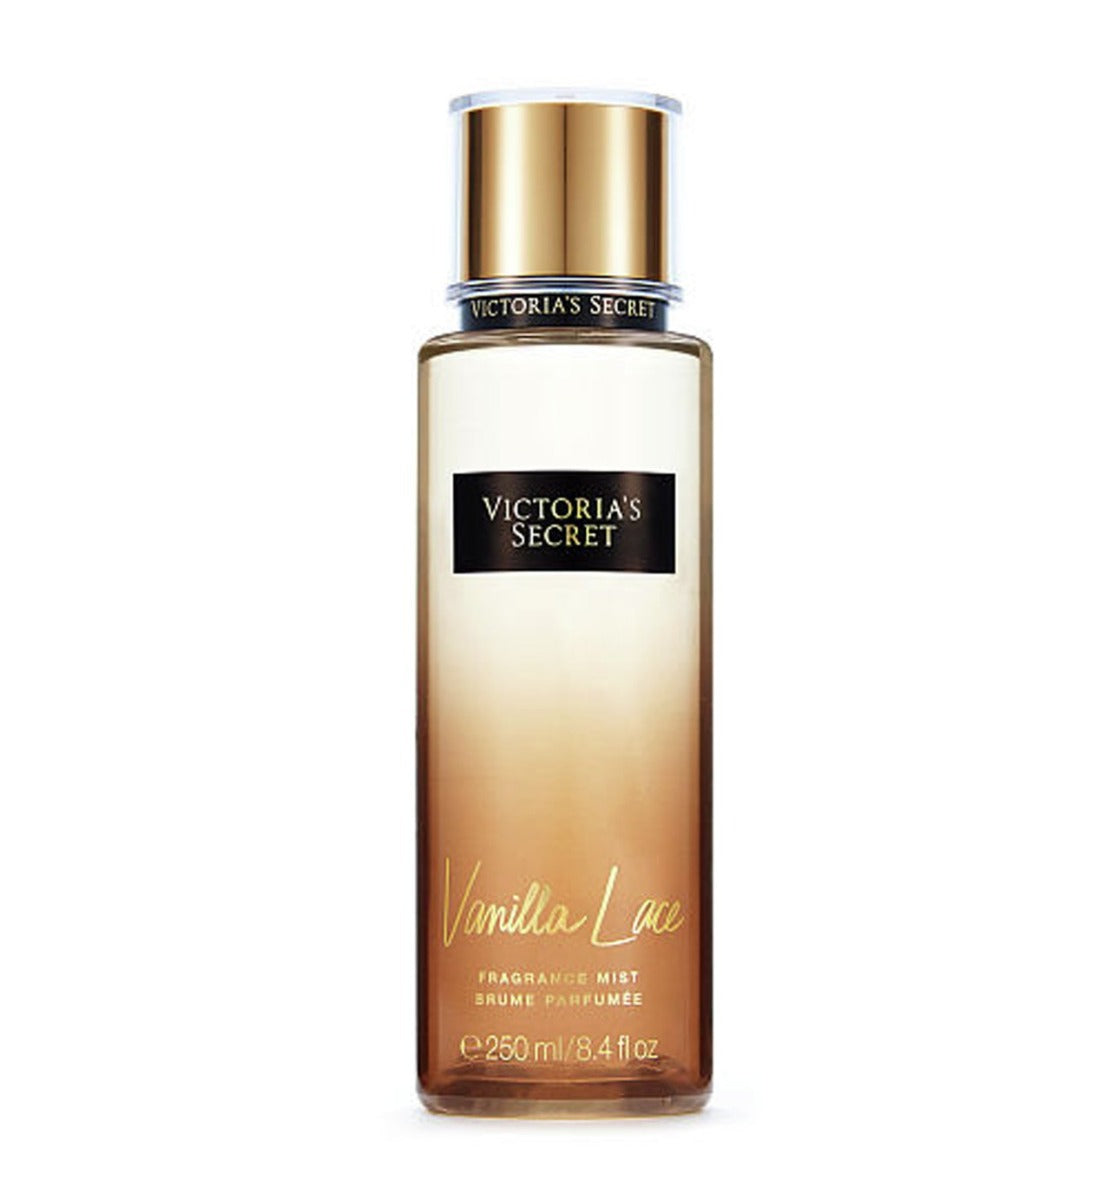 Victoria's Secret New! VELVET PETALS Shimmer Fragrance Mist 250ml